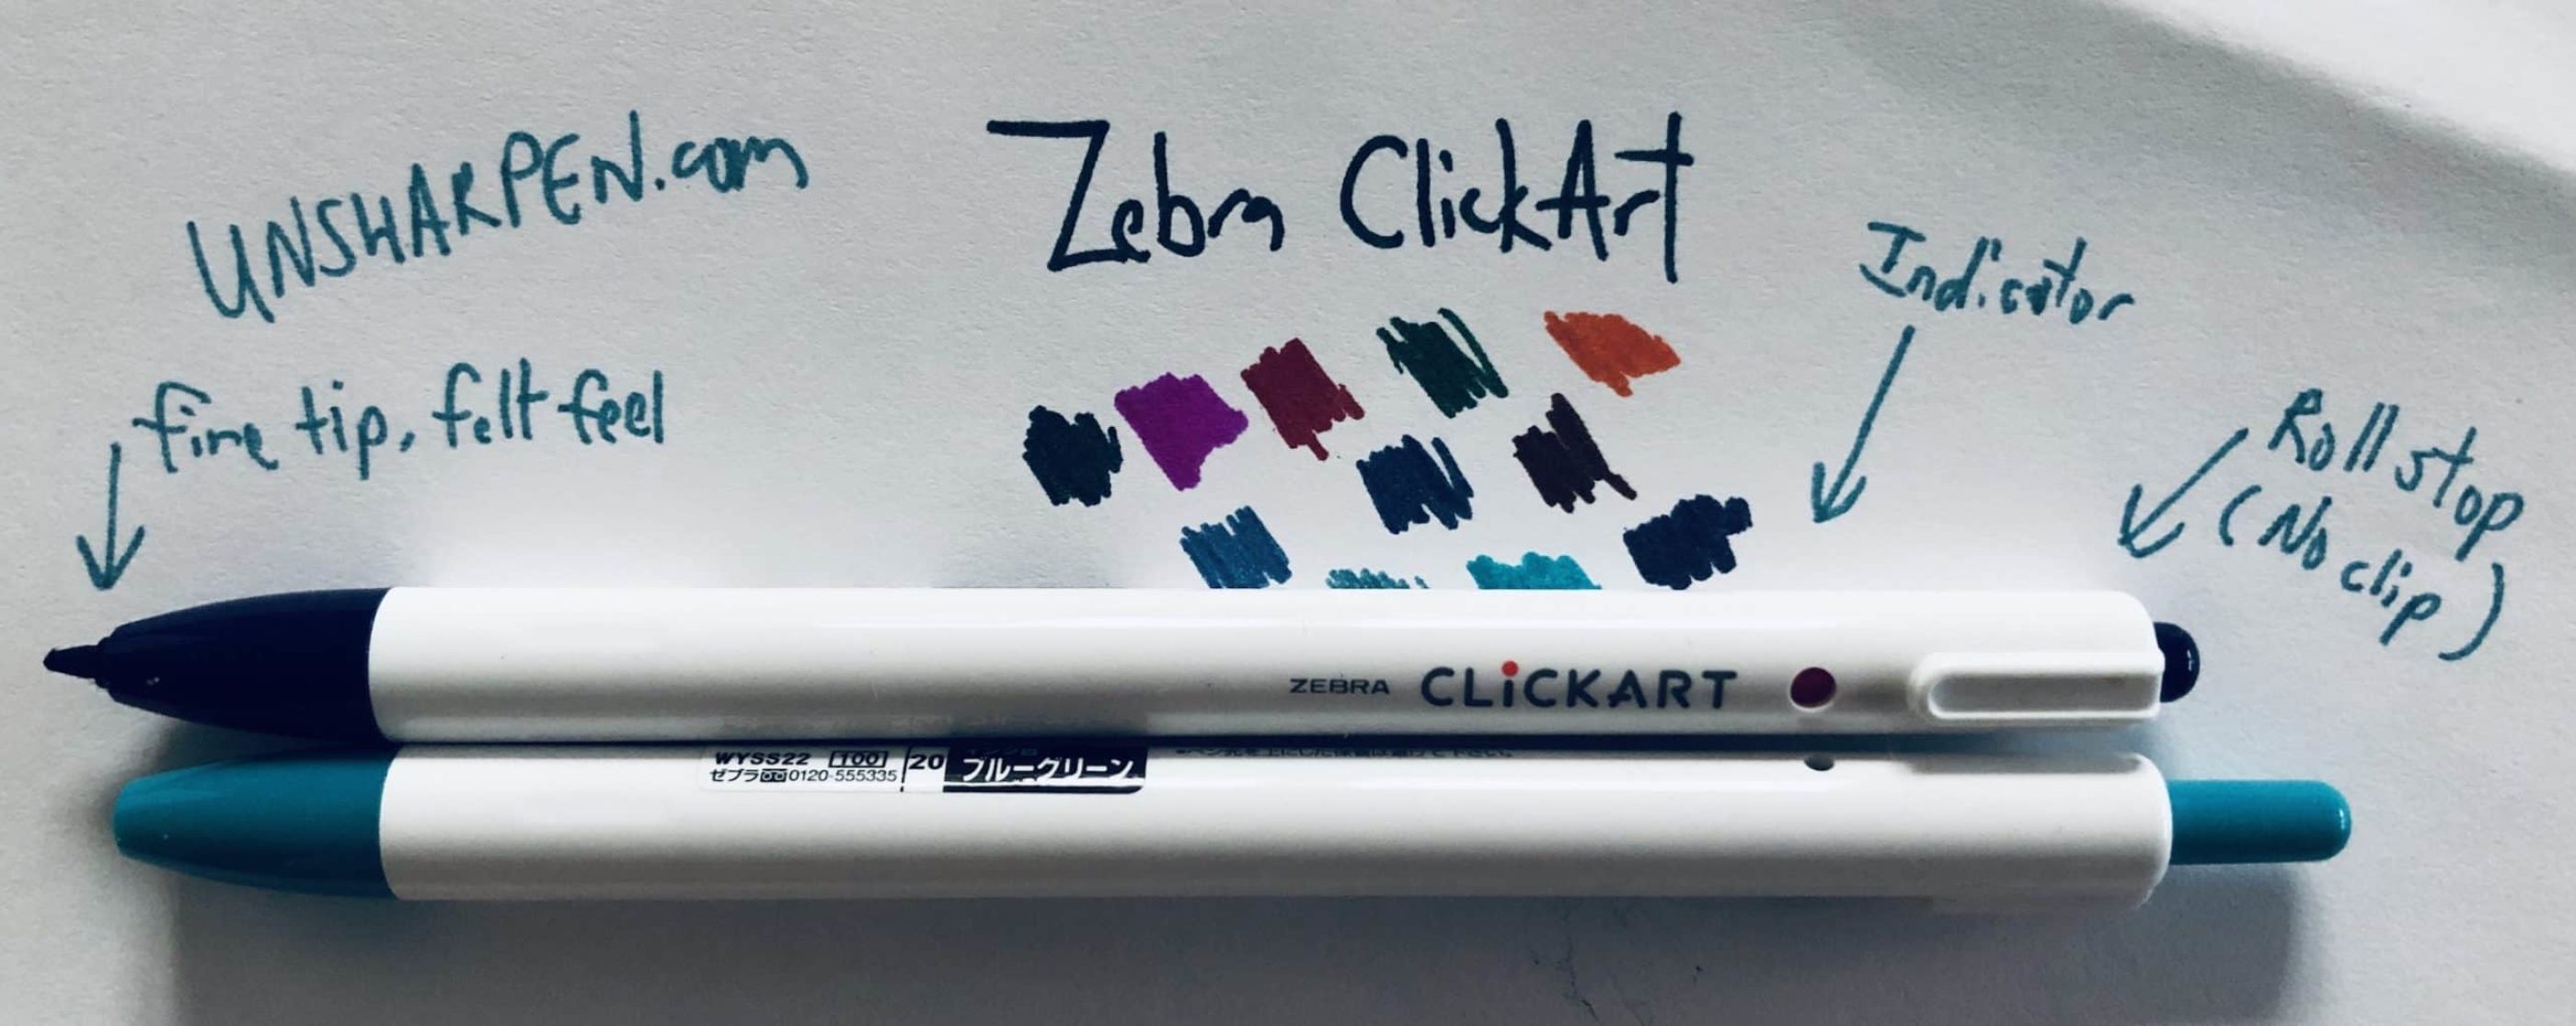 Zebra Clickart Sign Pen